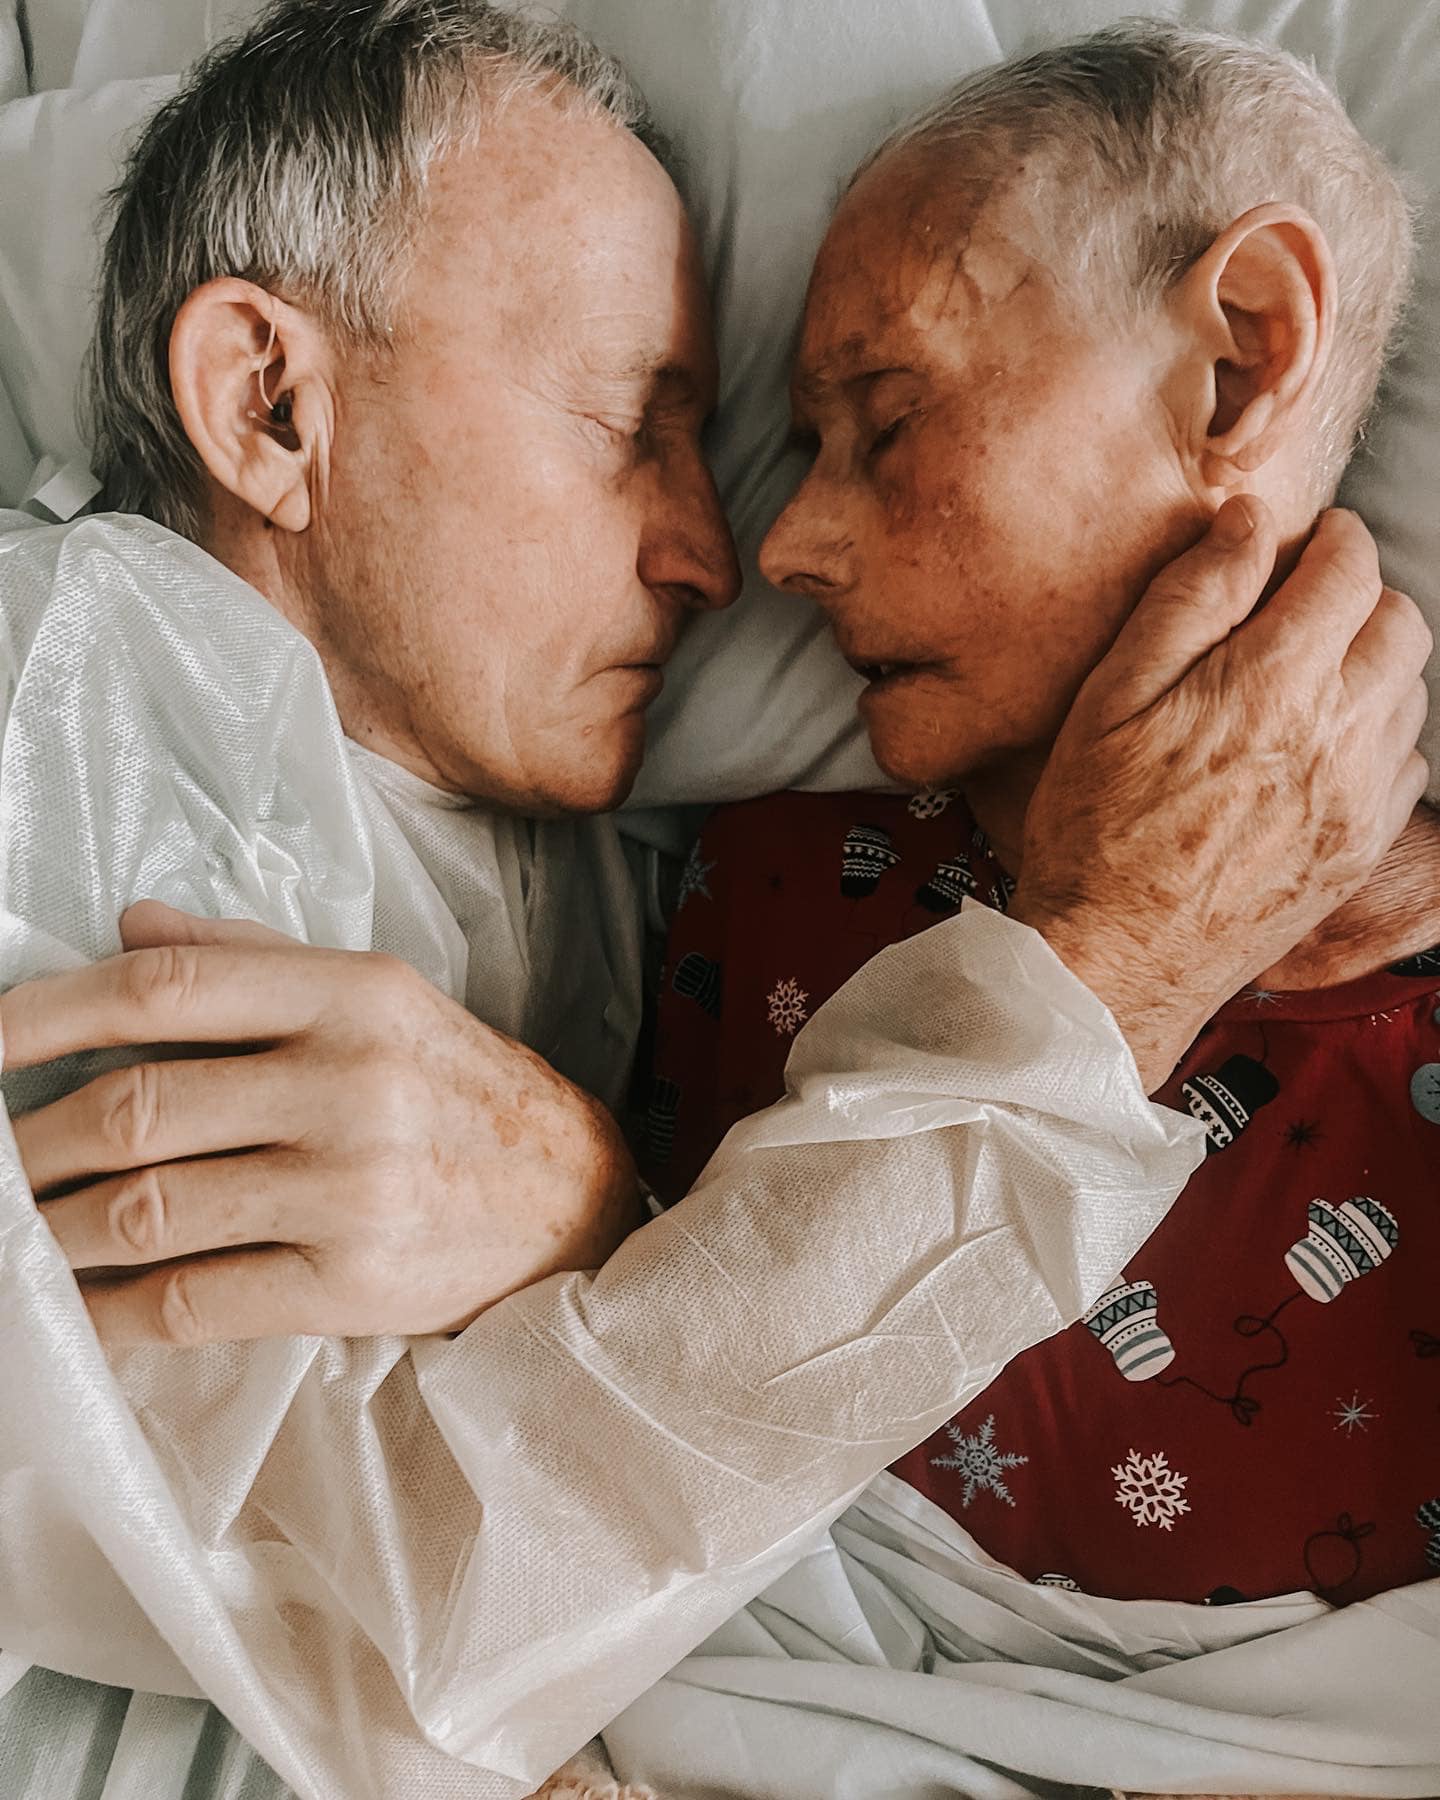 Cei doi bătrâni din poveste, stând îmbrățișați pe patul de spital, în timp ce bunicul își arată afecțiunea față de soția lui.